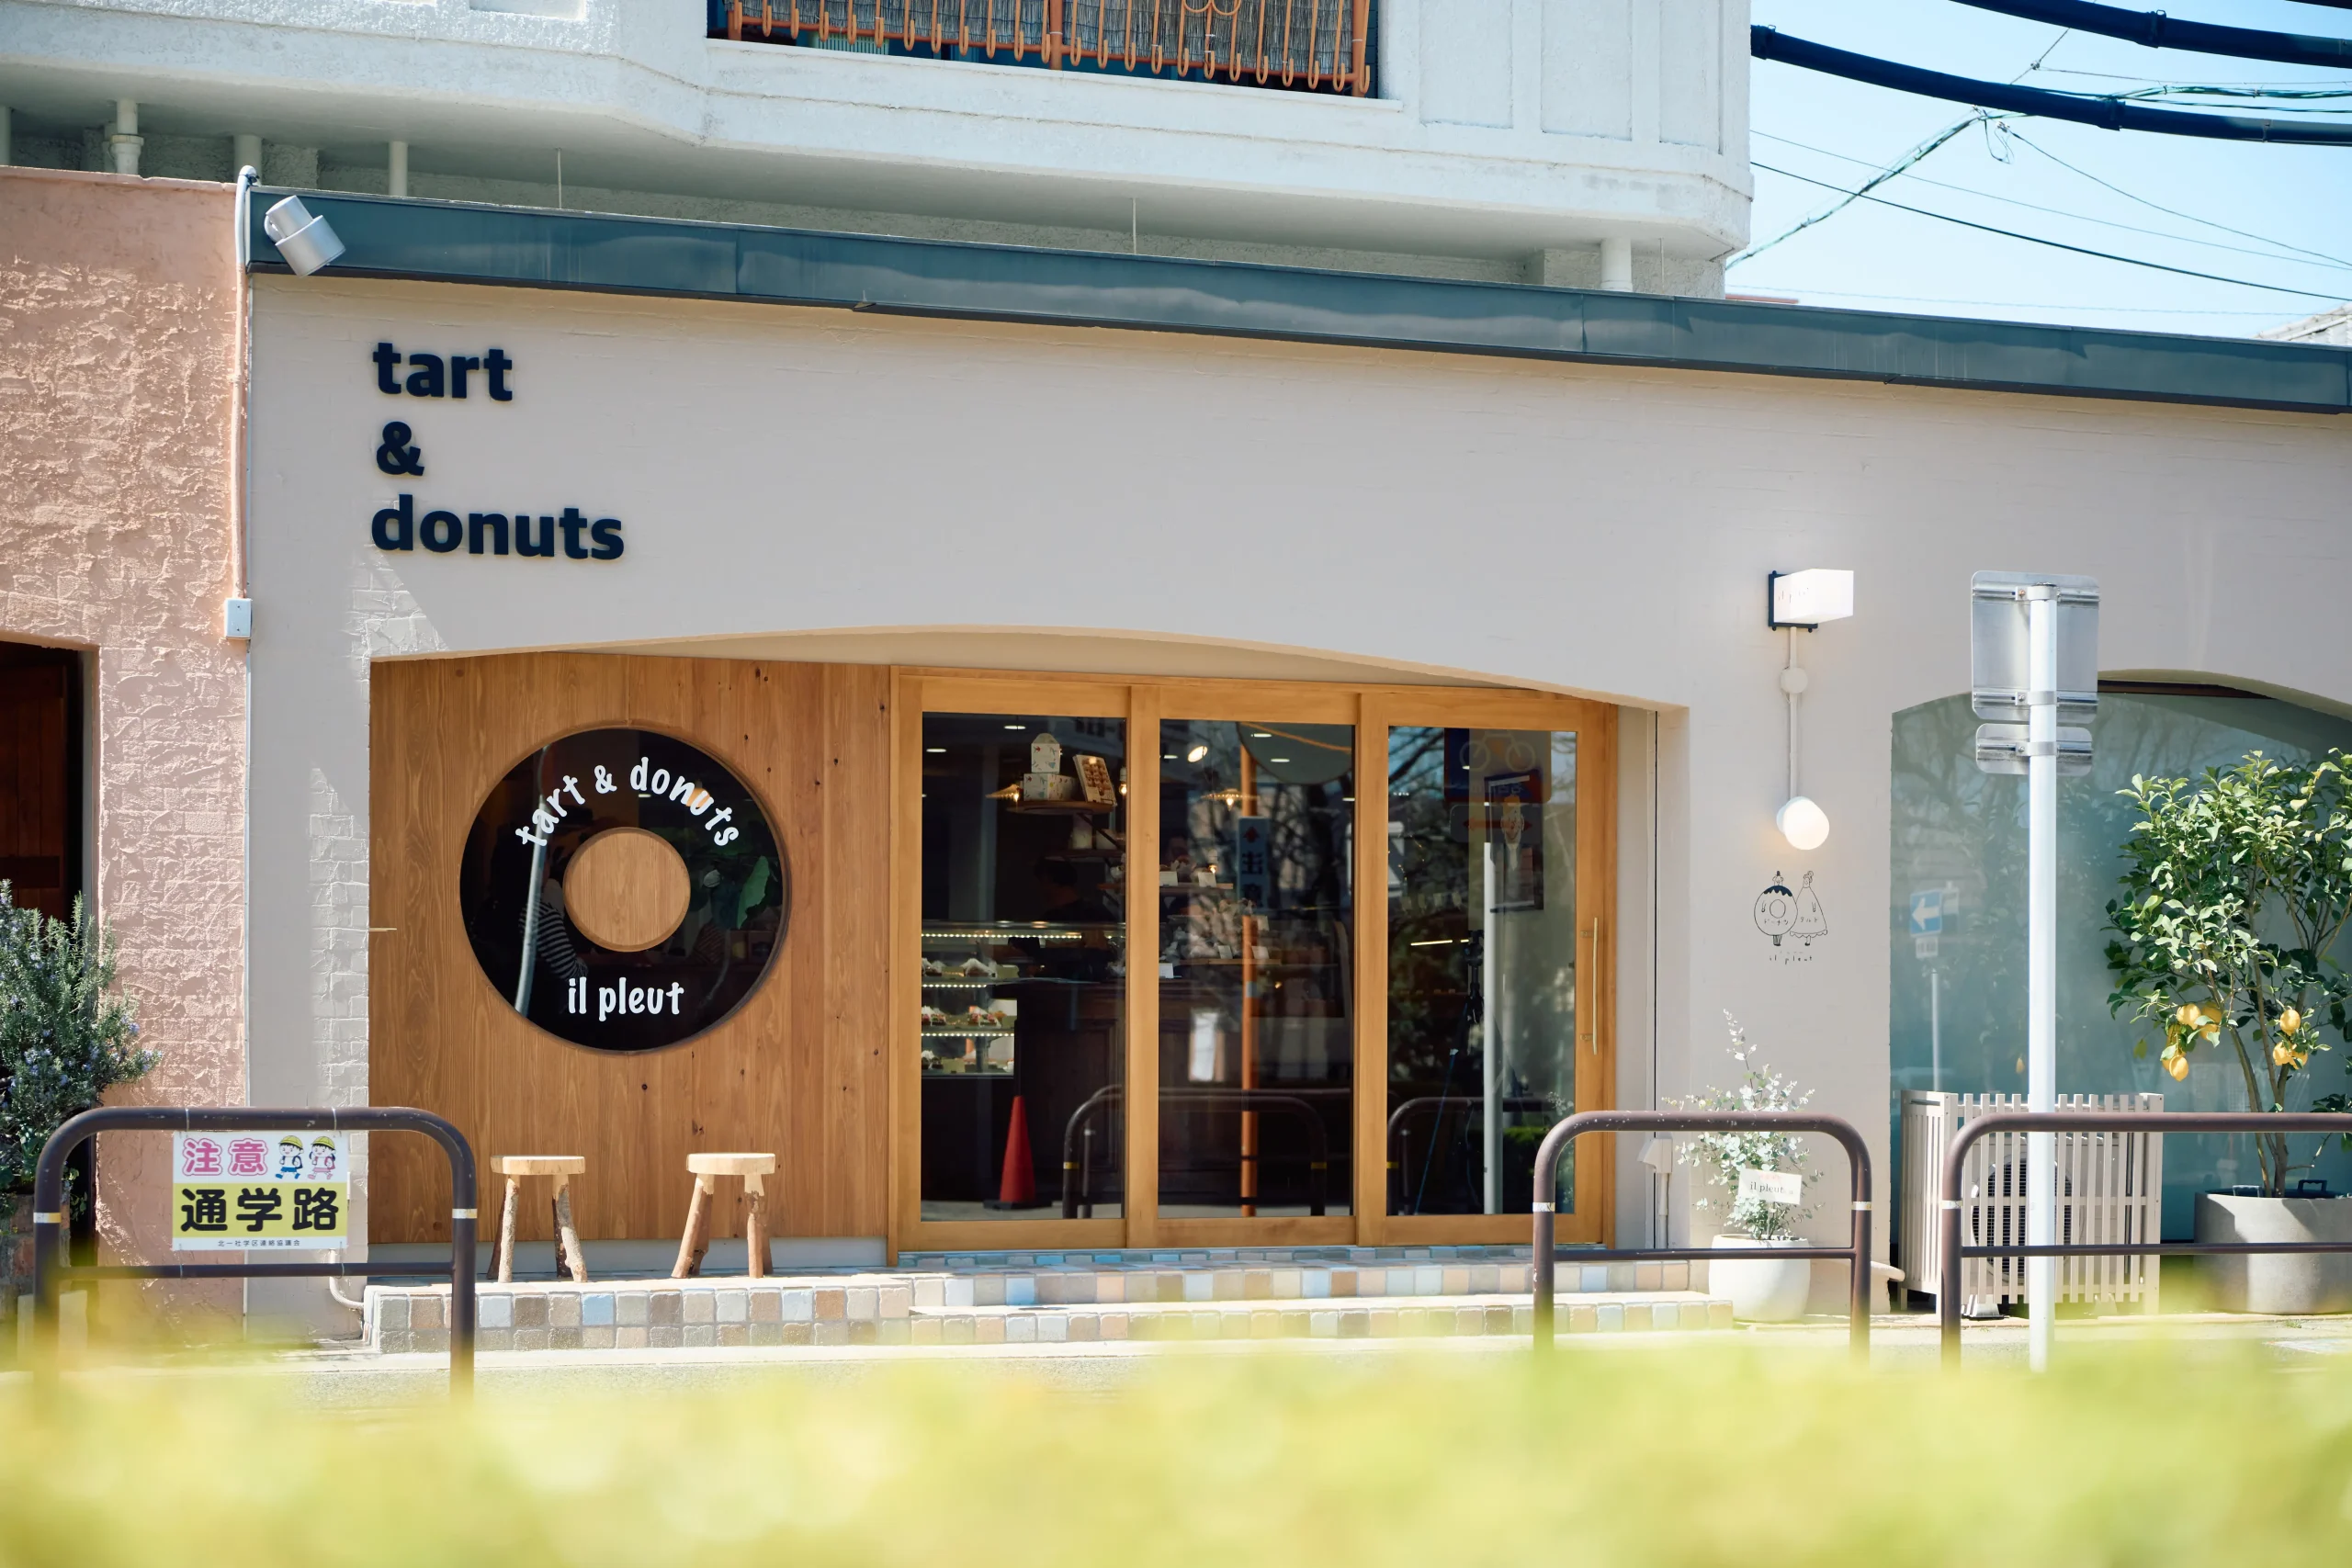 アネストワンがデザインしたタルトとドーナッツの店の外観